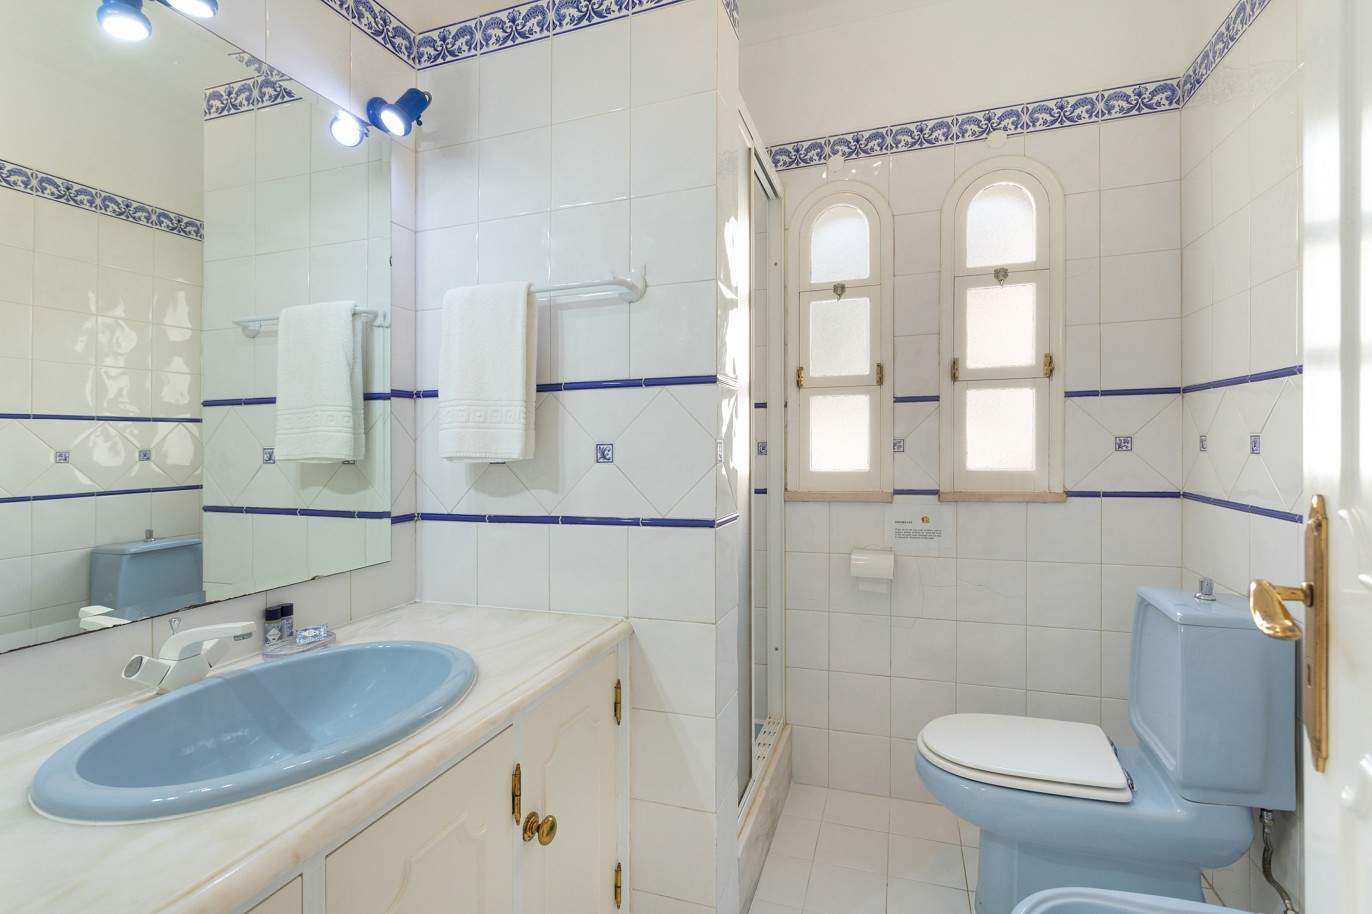 5 Bedroom Villa with swimming pool, for sale in Vilamoura, Algarve_212560